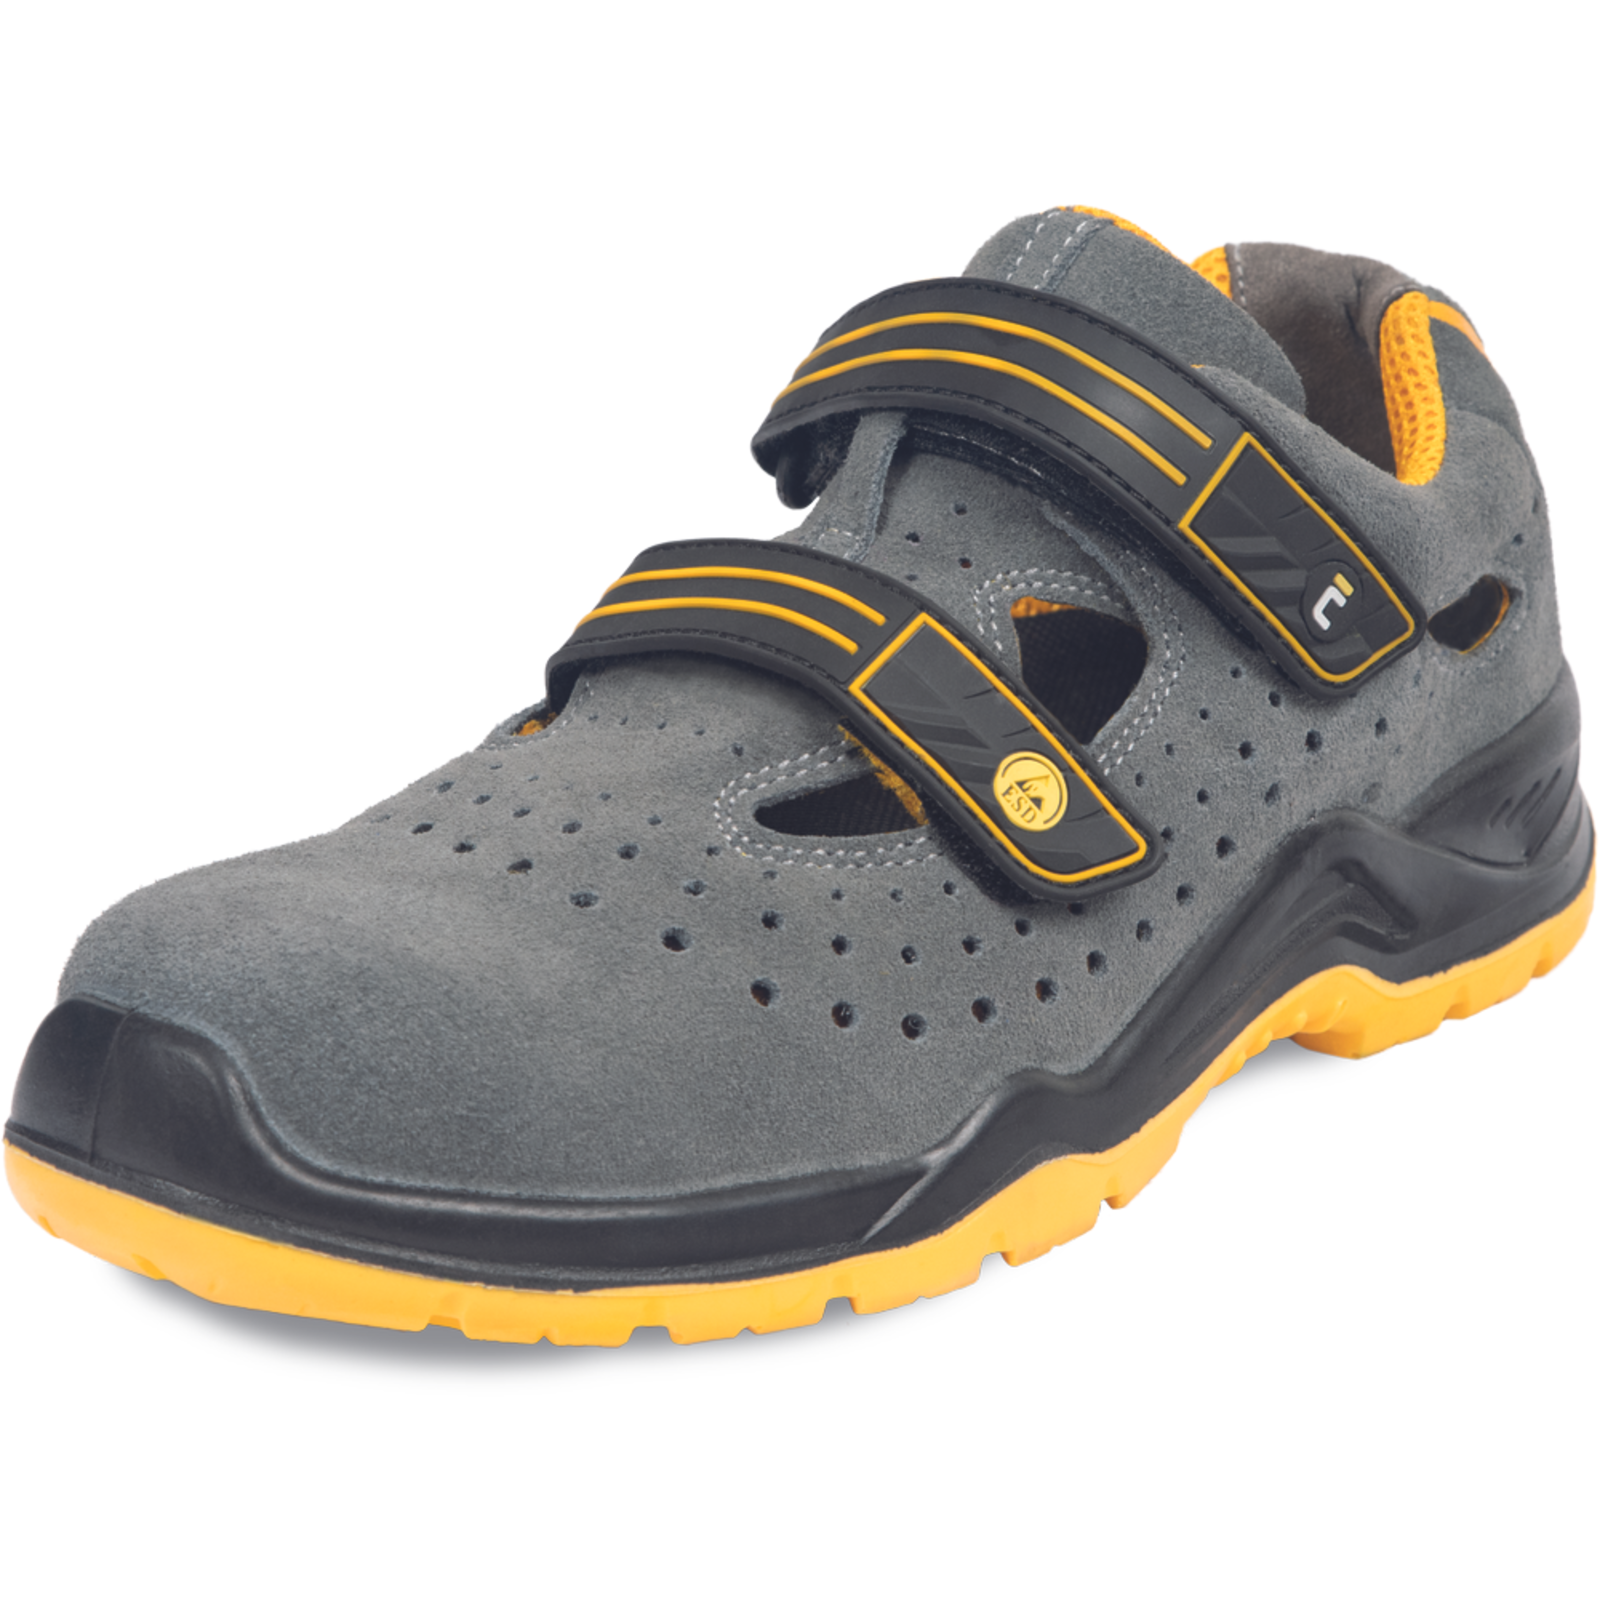 Pracovné bezpečnostné sandále Cerva Yuwill MF ESD S1P SRC - veľkosť: 40, farba: sivá/žltá